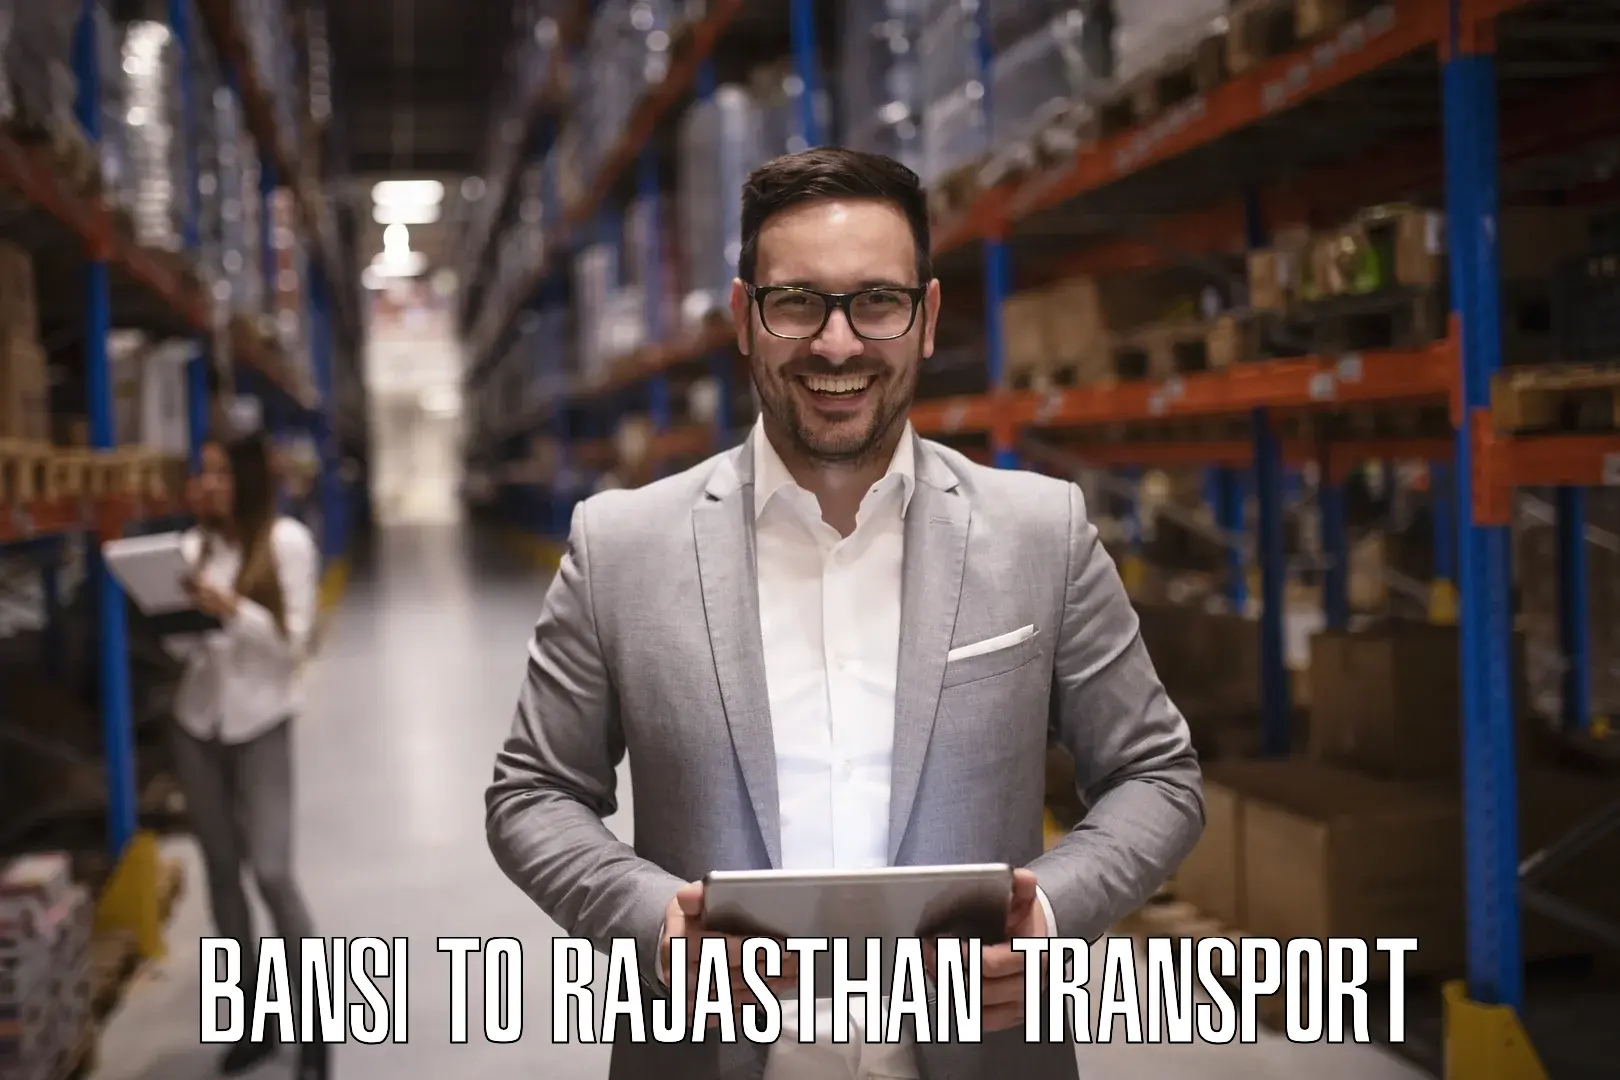 Furniture transport service Bansi to Rajasthan